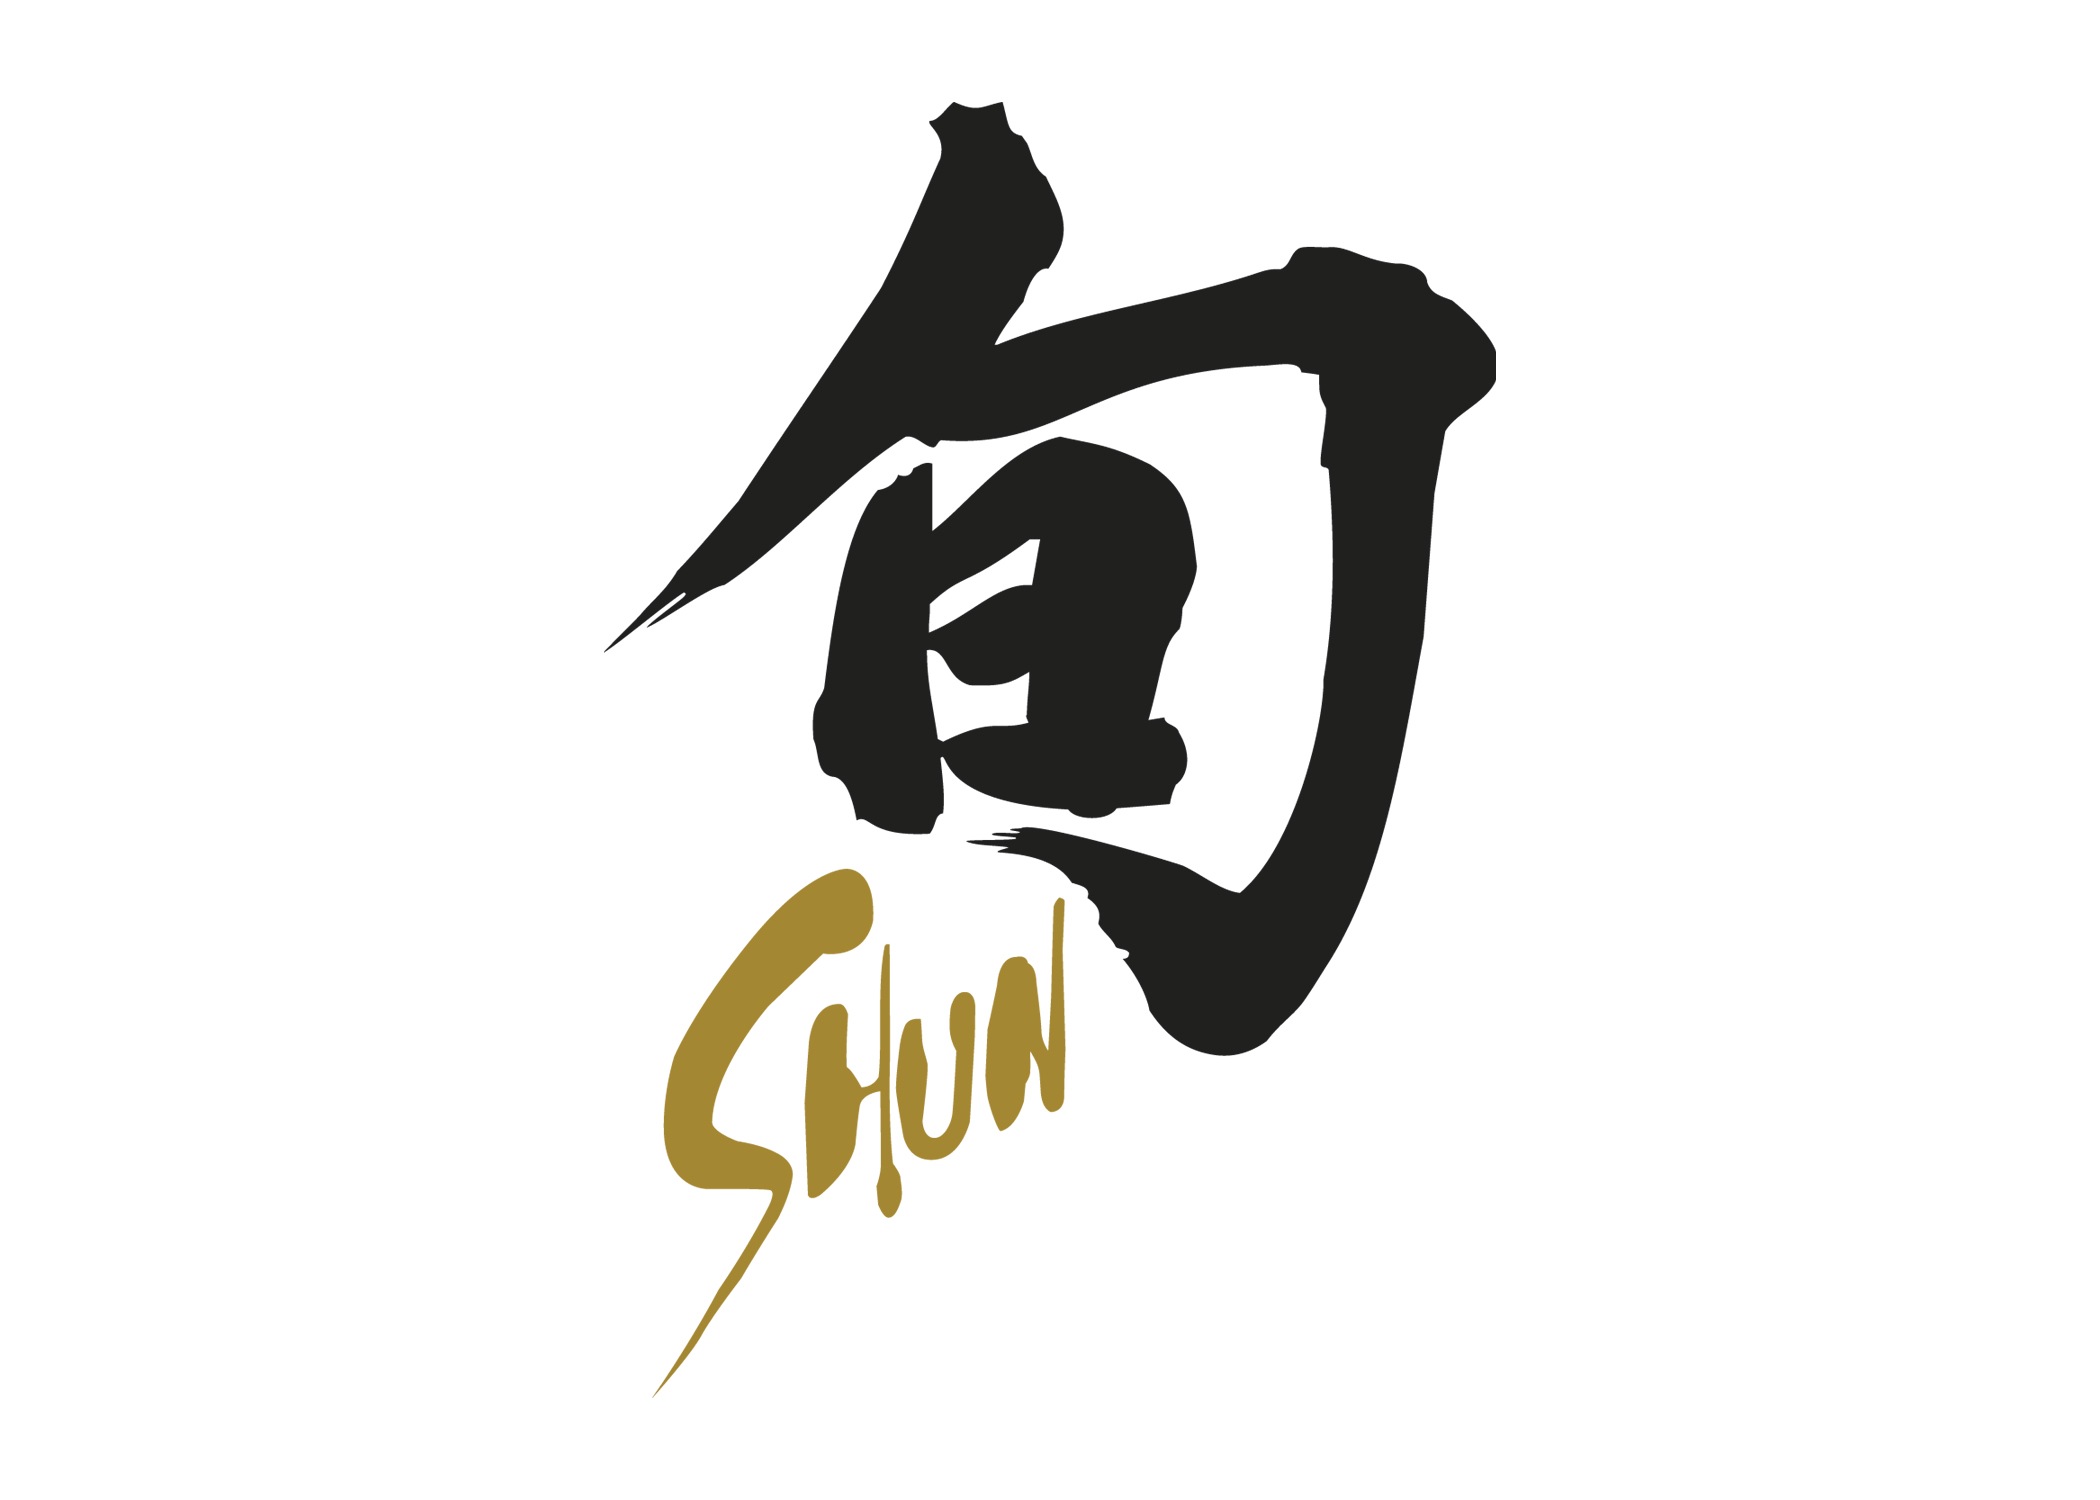 Shun